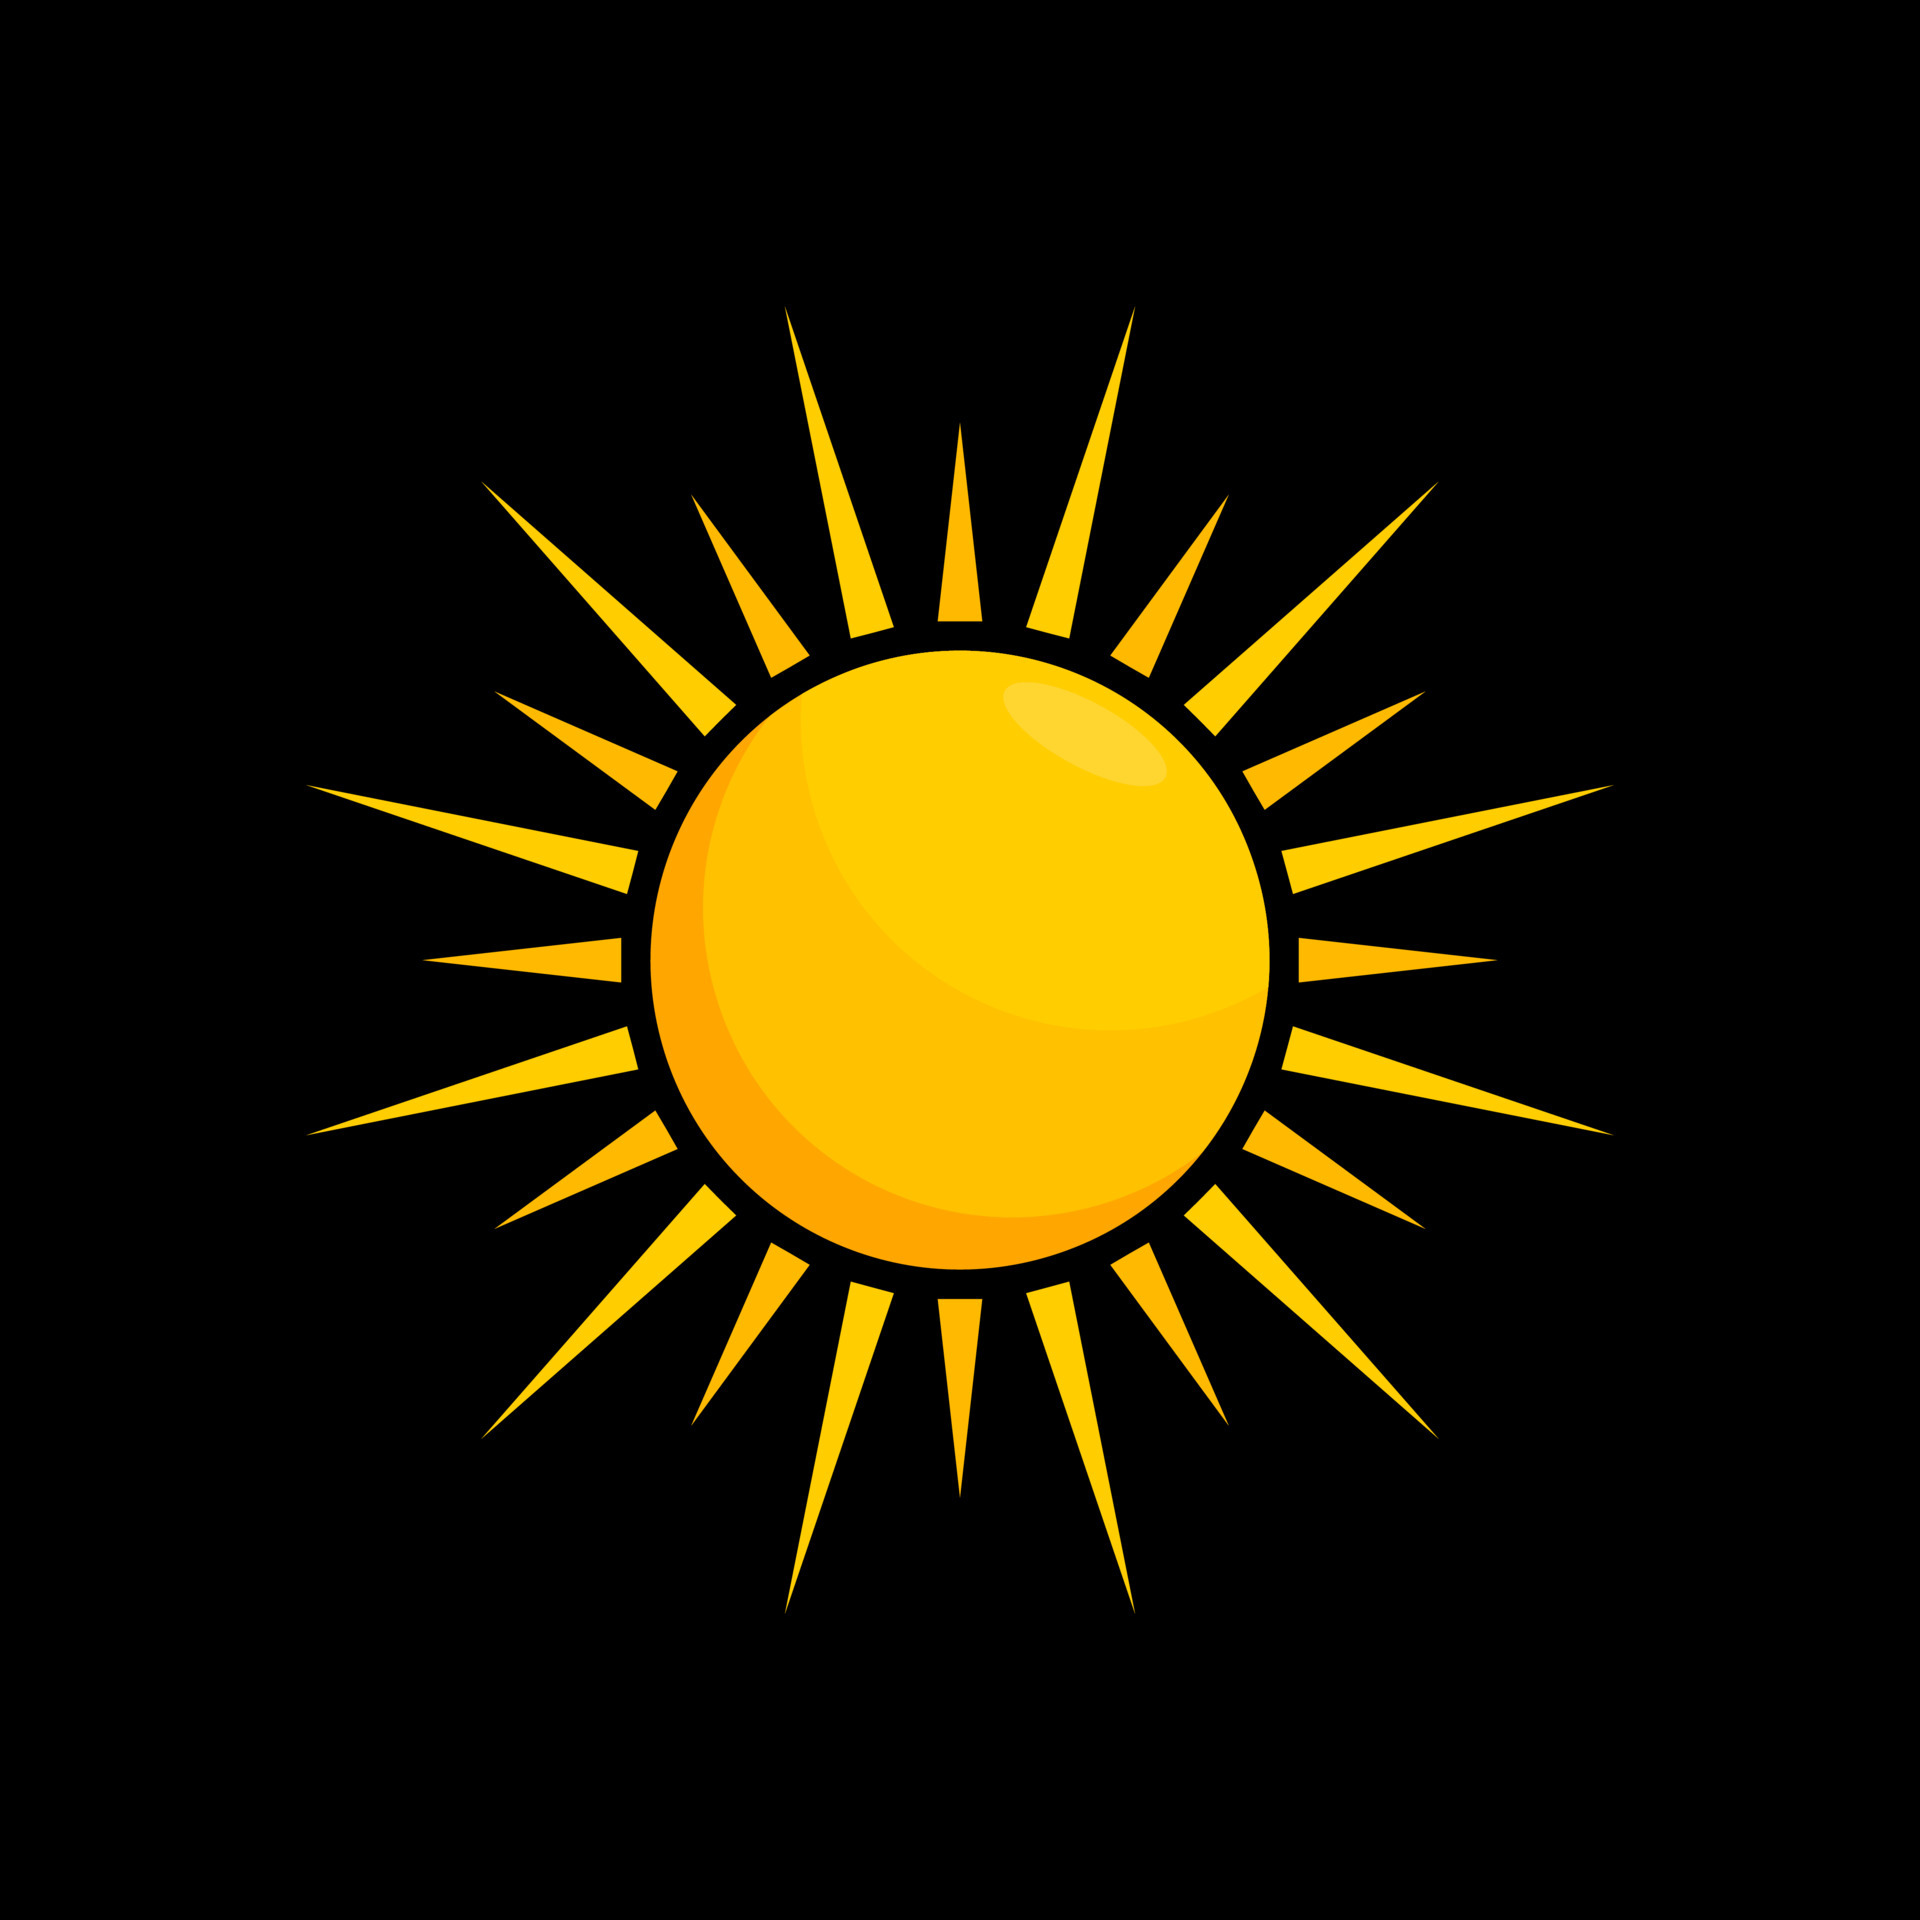 Icon mặt trời trên nền đen: Hình ảnh icon mặt trời trên nền đen là một sự kết hợp hoàn hảo giữa sắc đẹp và tính thẩm mỹ. Hãy cùng ngắm nhìn cách mà icon mặt trời sáng rực trên nền đen tạo nên một tác phẩm nghệ thuật độc đáo.